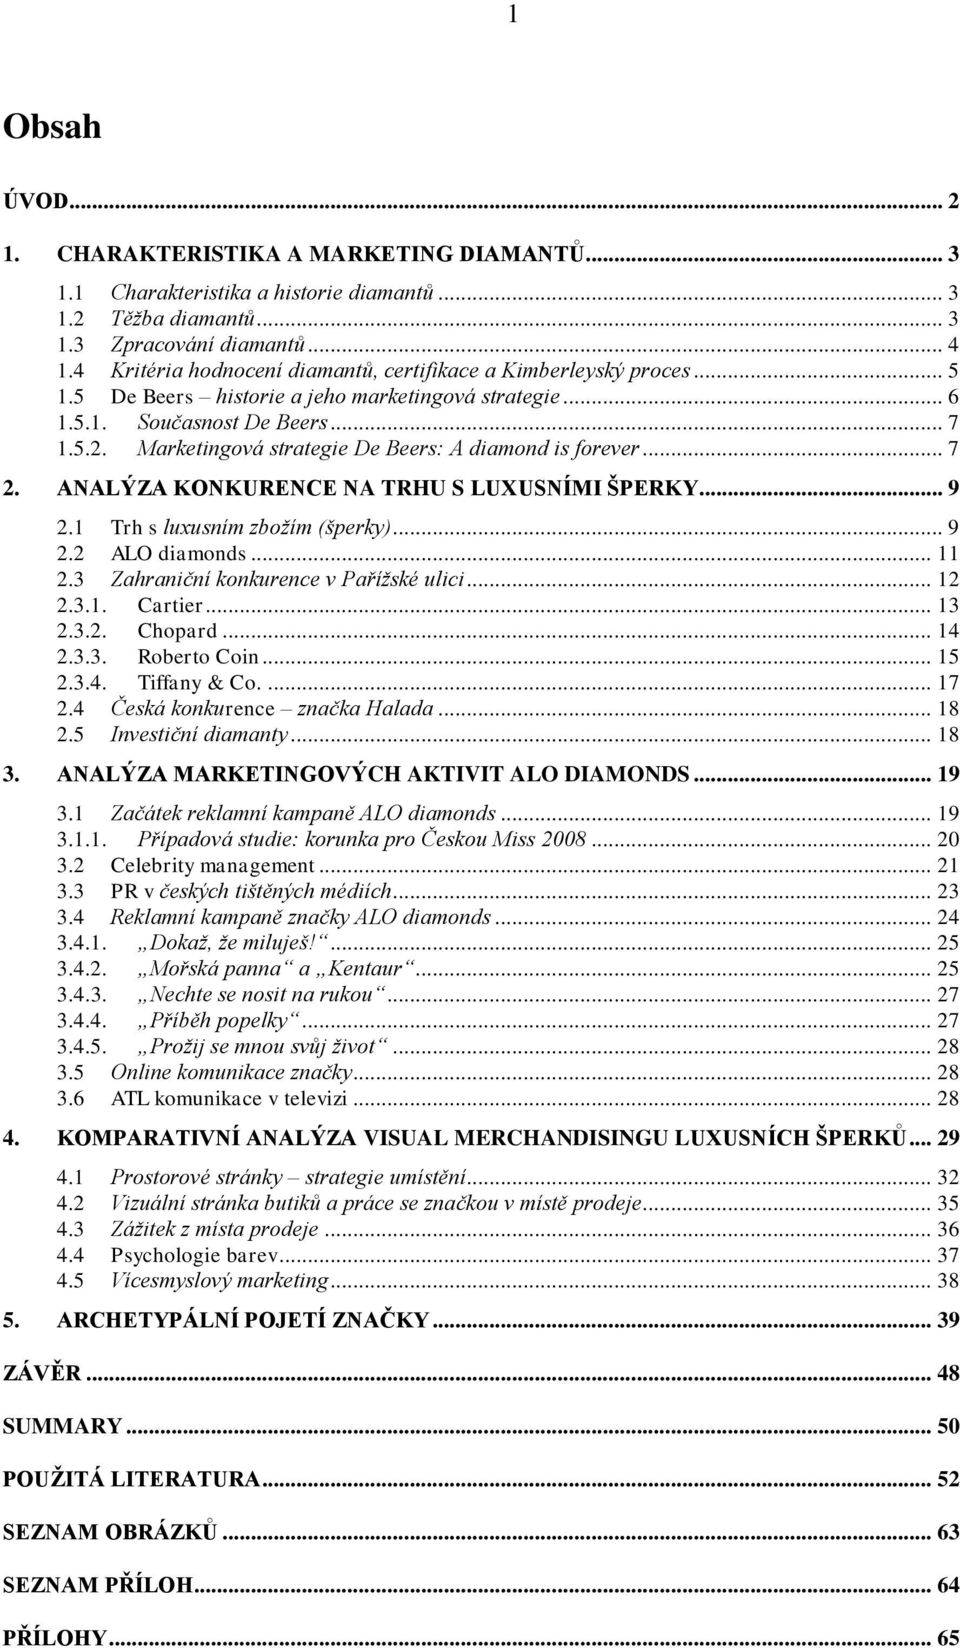 UNIVERZITA KARLOVA V PRAZE - PDF Stažení zdarma